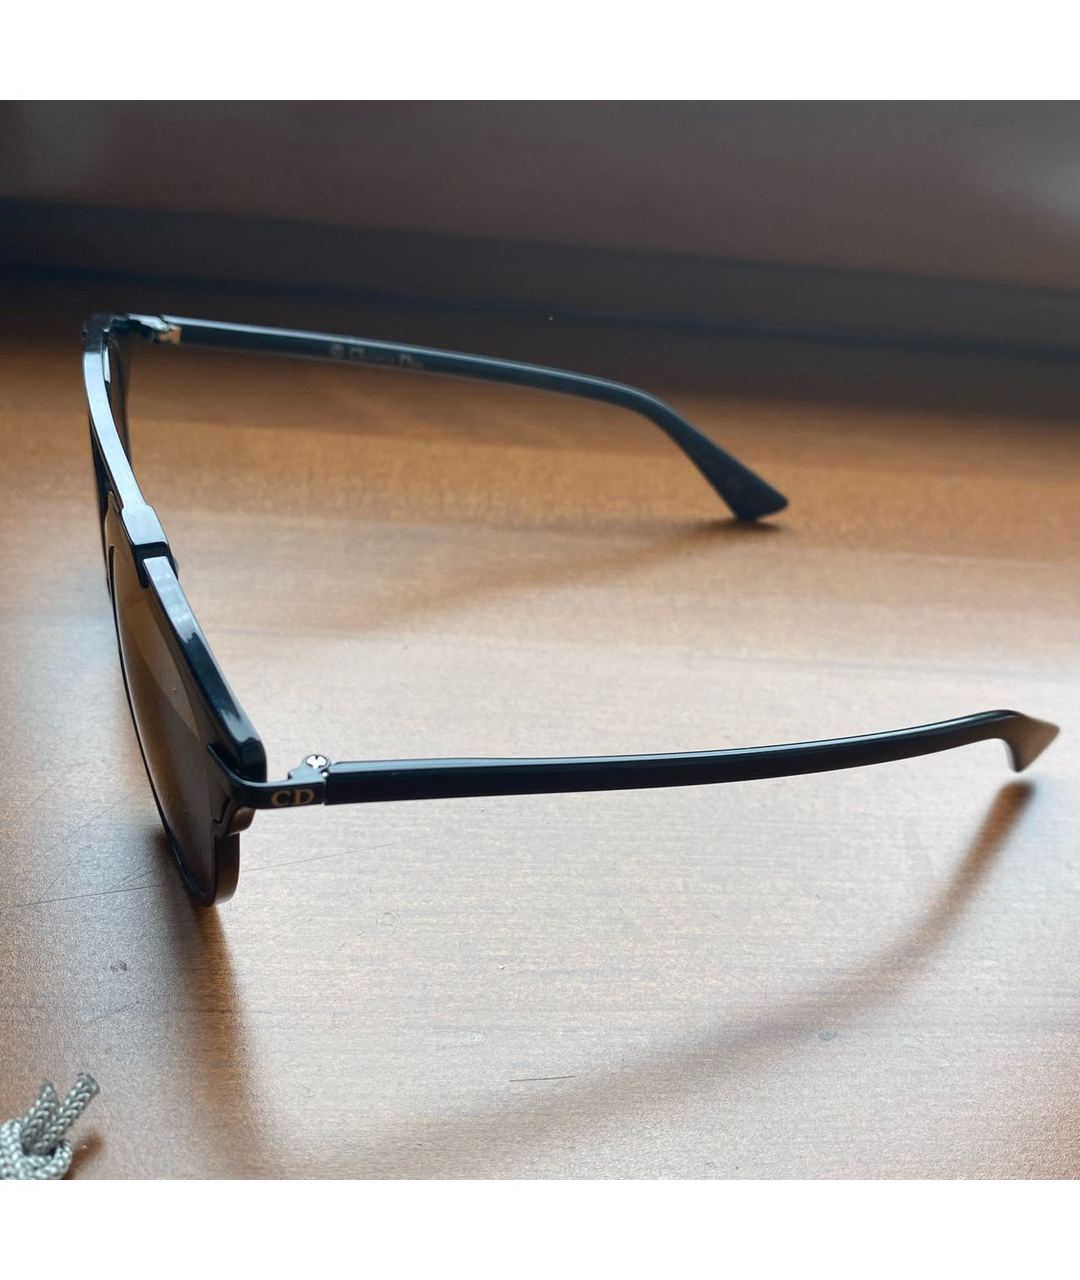 CHRISTIAN DIOR PRE-OWNED Черные пластиковые солнцезащитные очки, фото 3